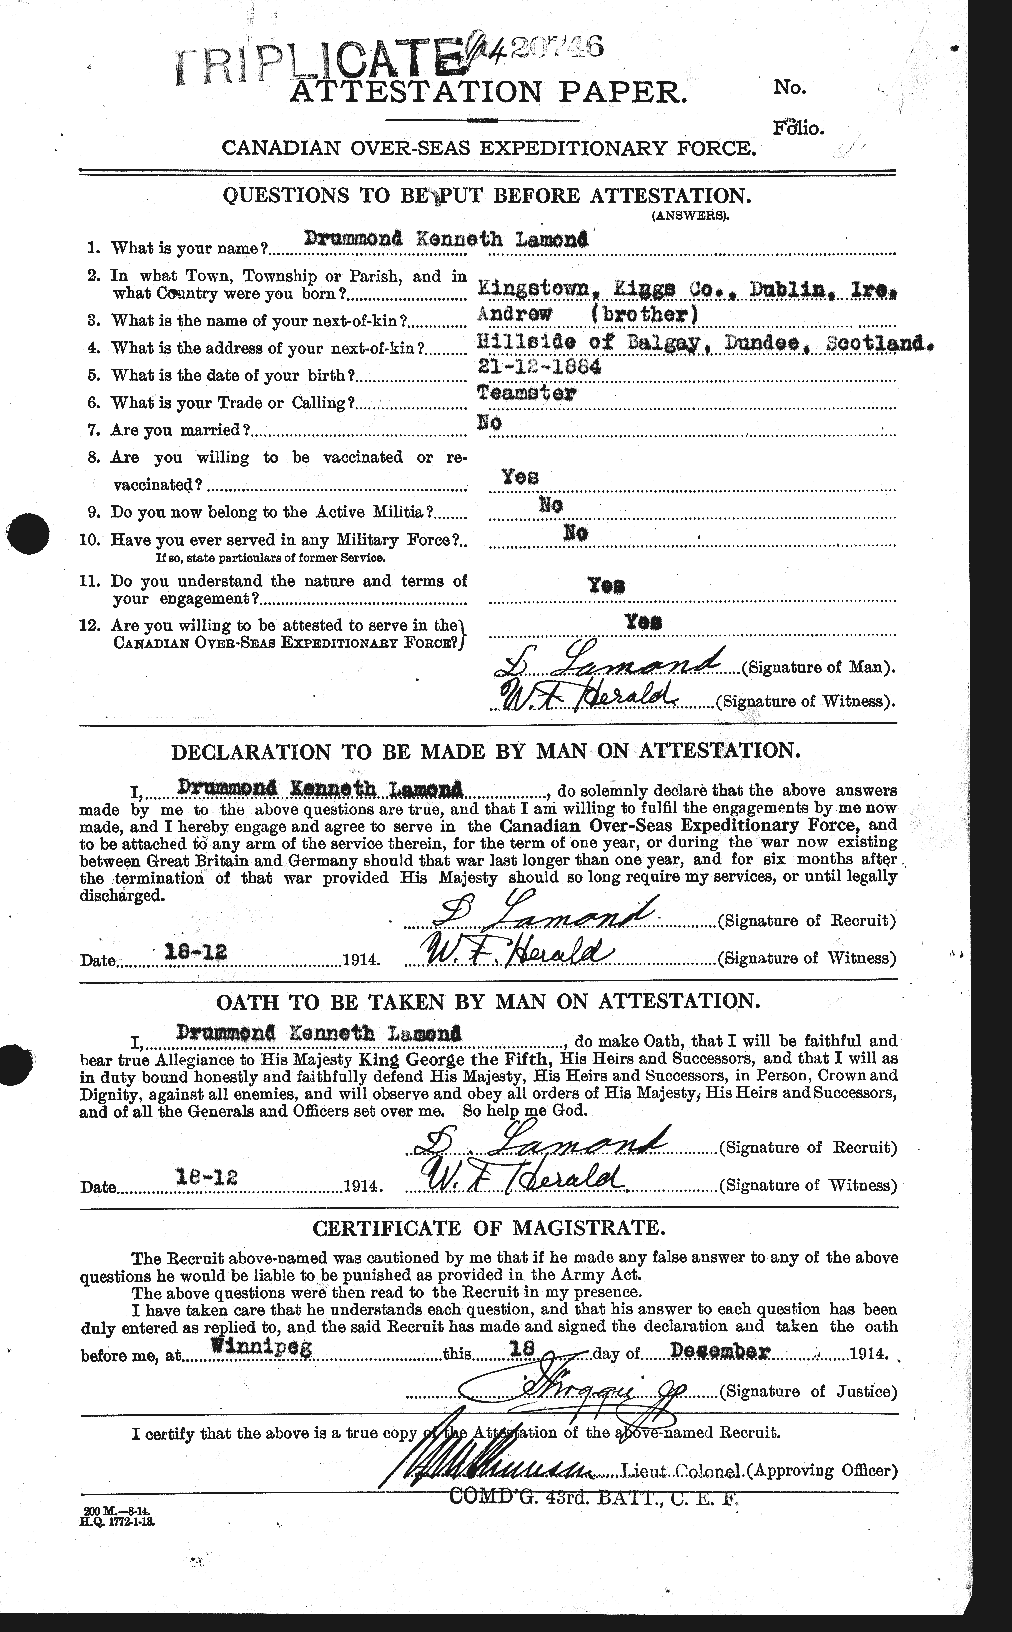 Dossiers du Personnel de la Première Guerre mondiale - CEC 446076a